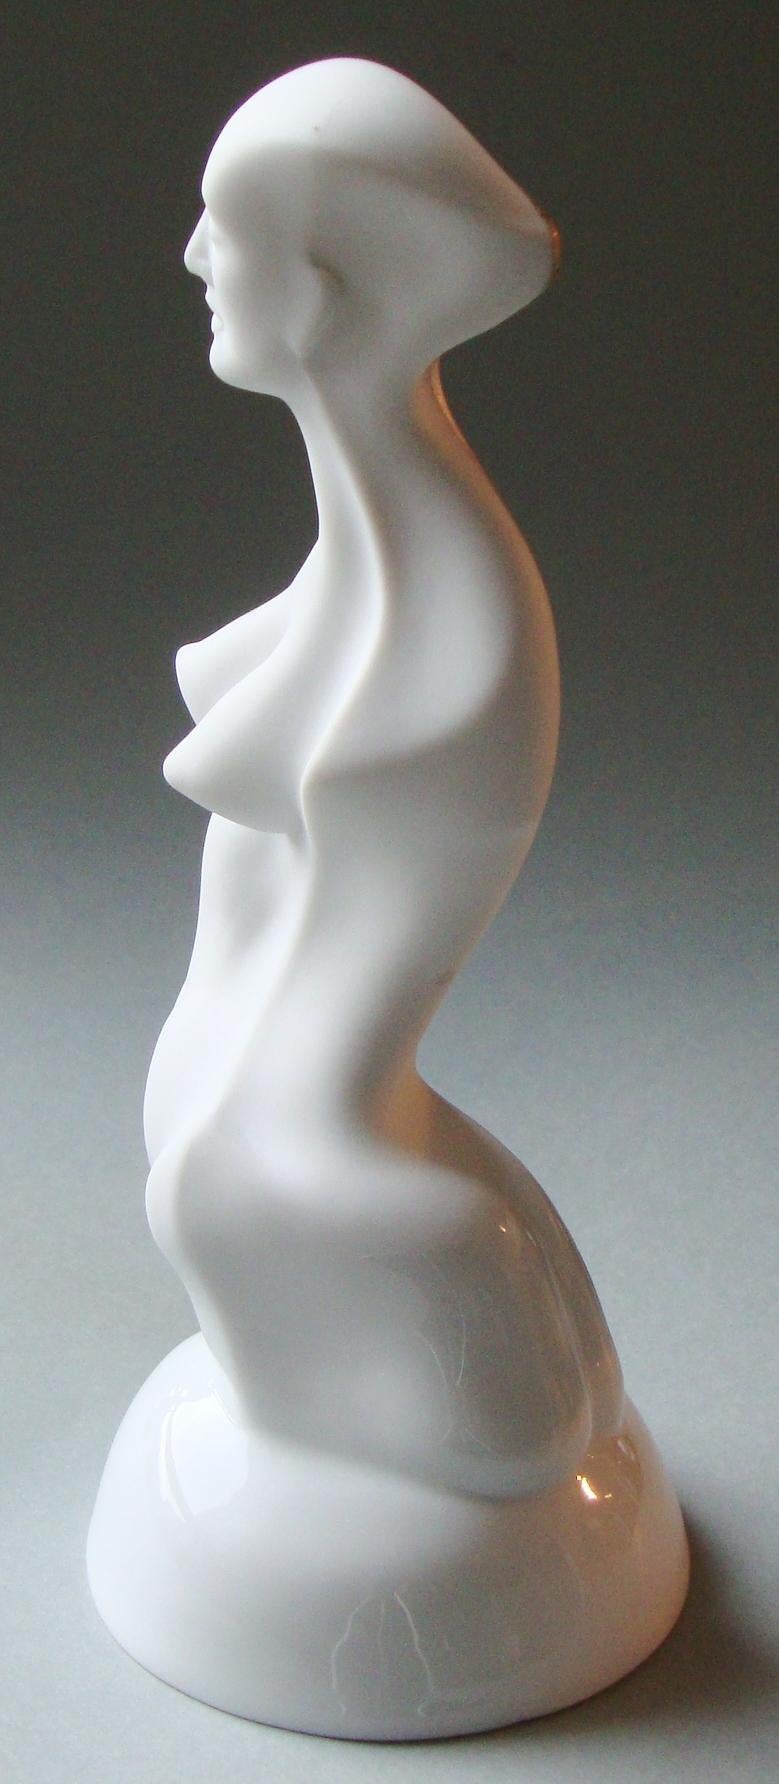 Frauenfigur auf einem Podest  Porzellan, Silber, H 20 cm – Sculpture von Ilona Romule